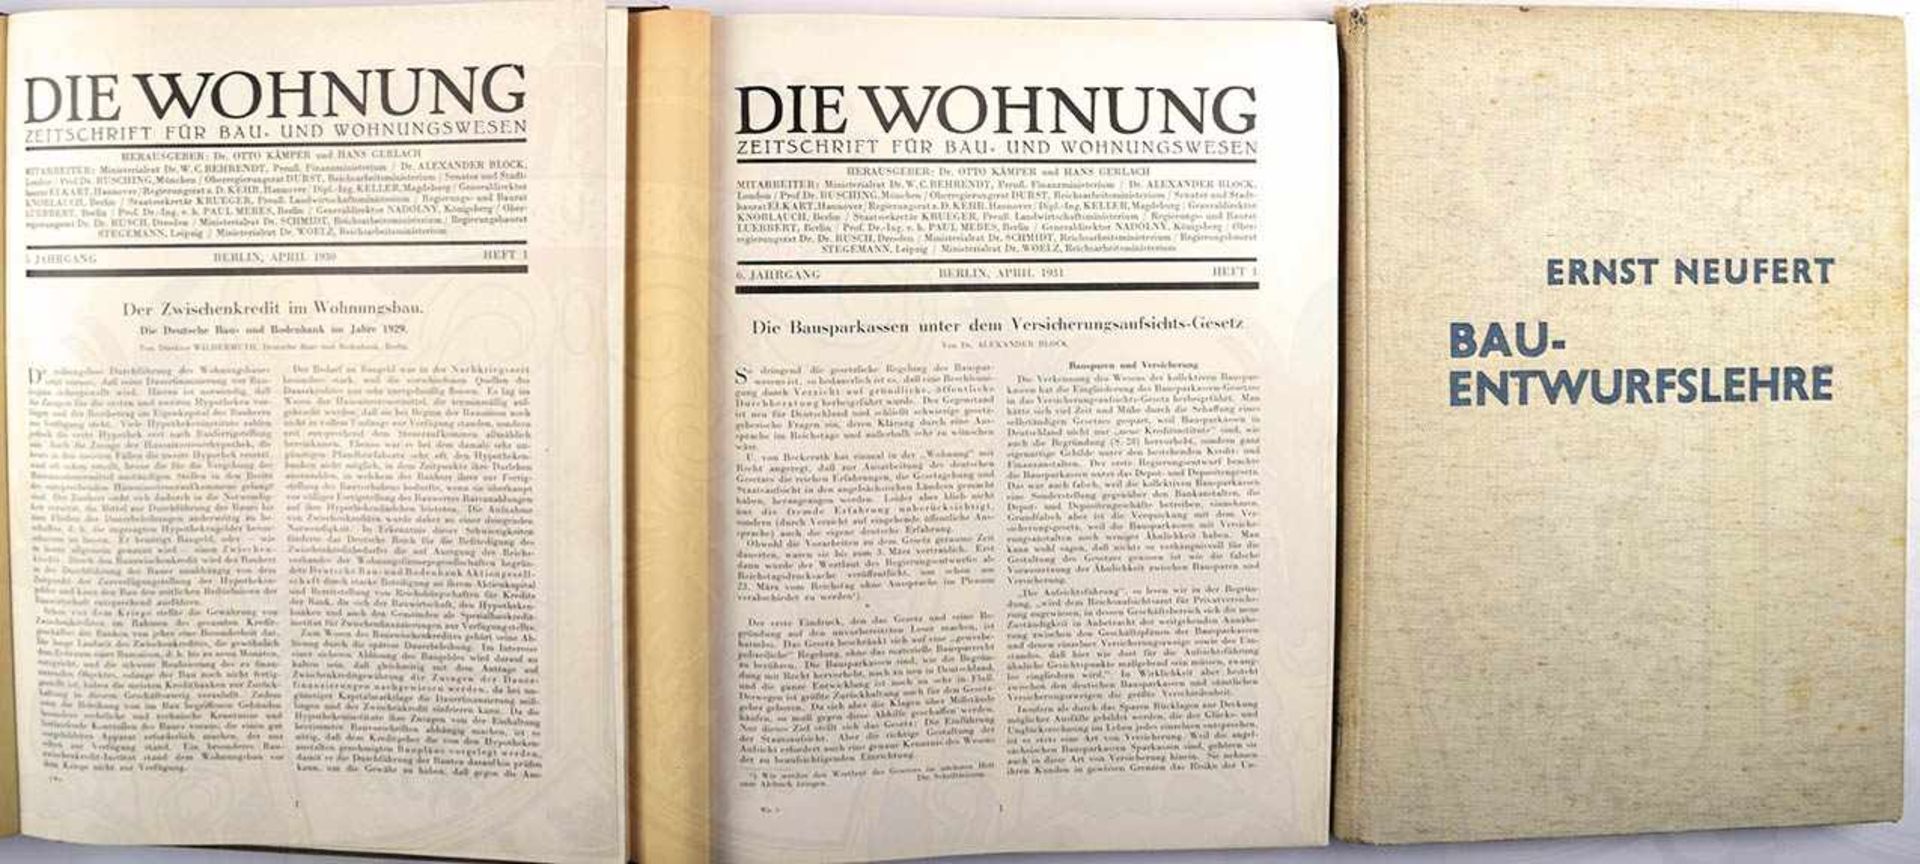 DIE WOHNUNG - ZEITSCHRIFT FÜR BAU- UND WOHNUNGSWESEN, 1930-32, in 2 Bänden, ges. 920 S., Abb.,